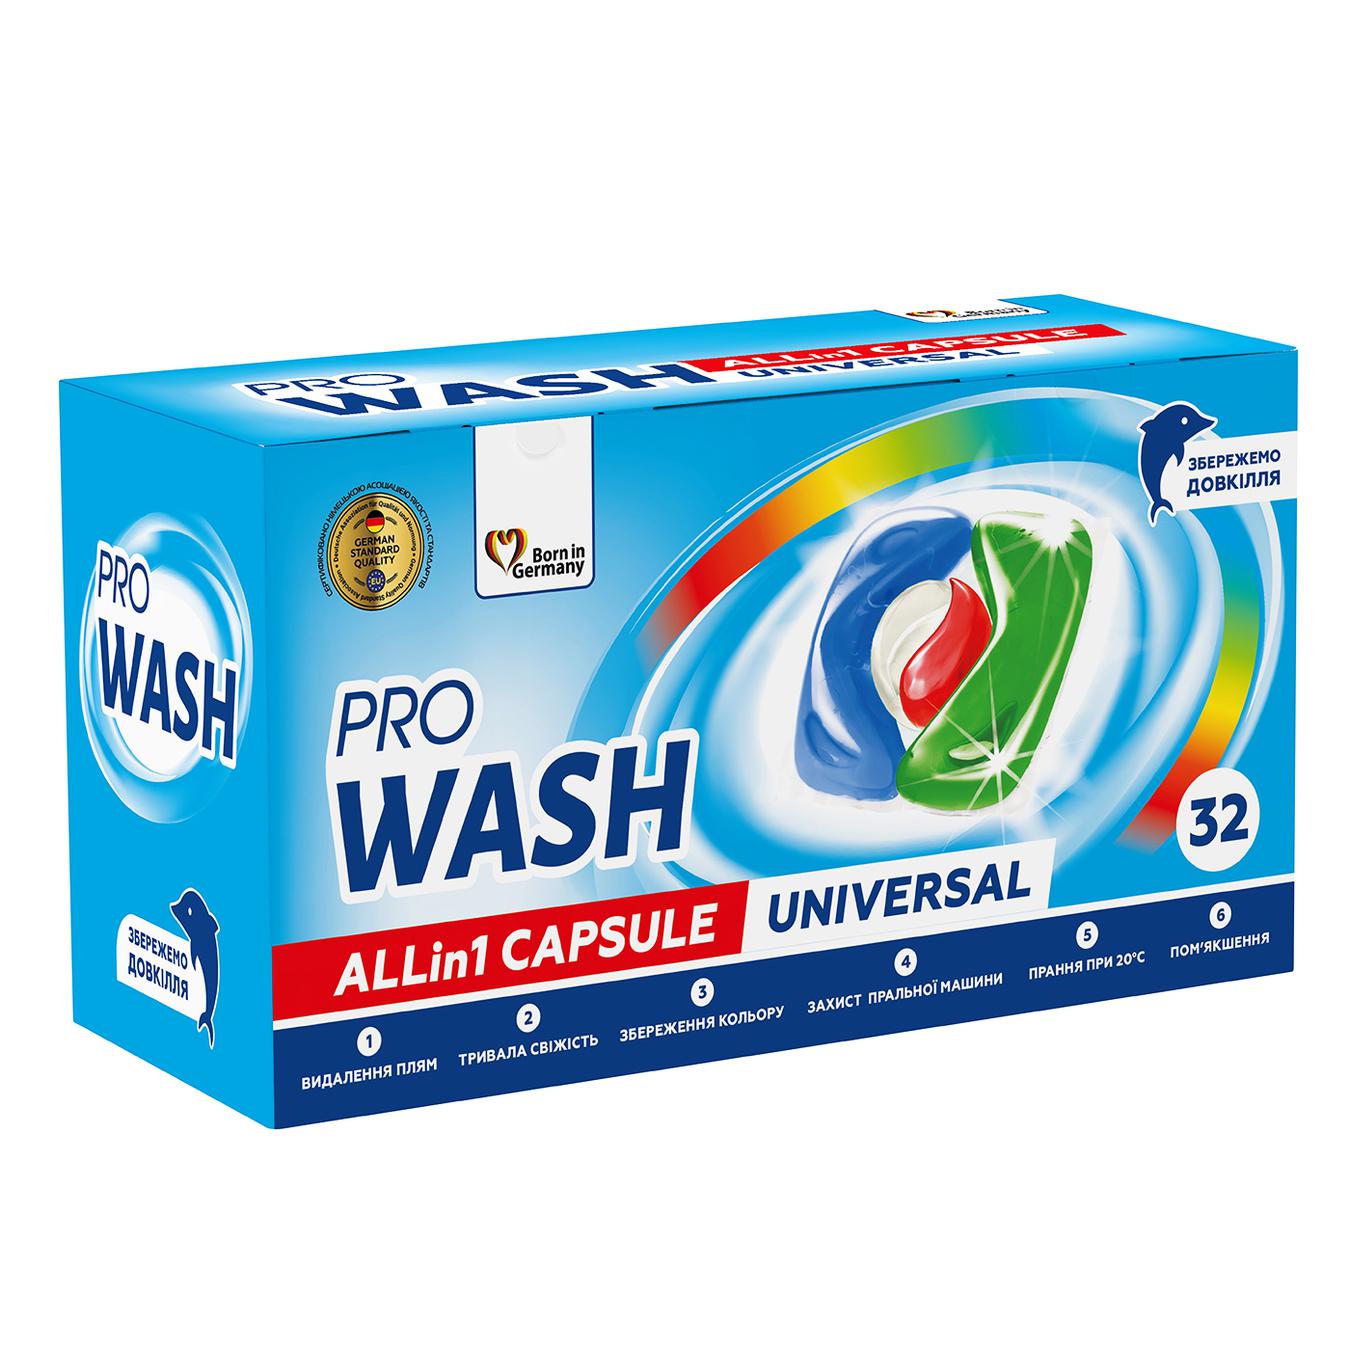 Pro Wash capsules for washing 32 pcs